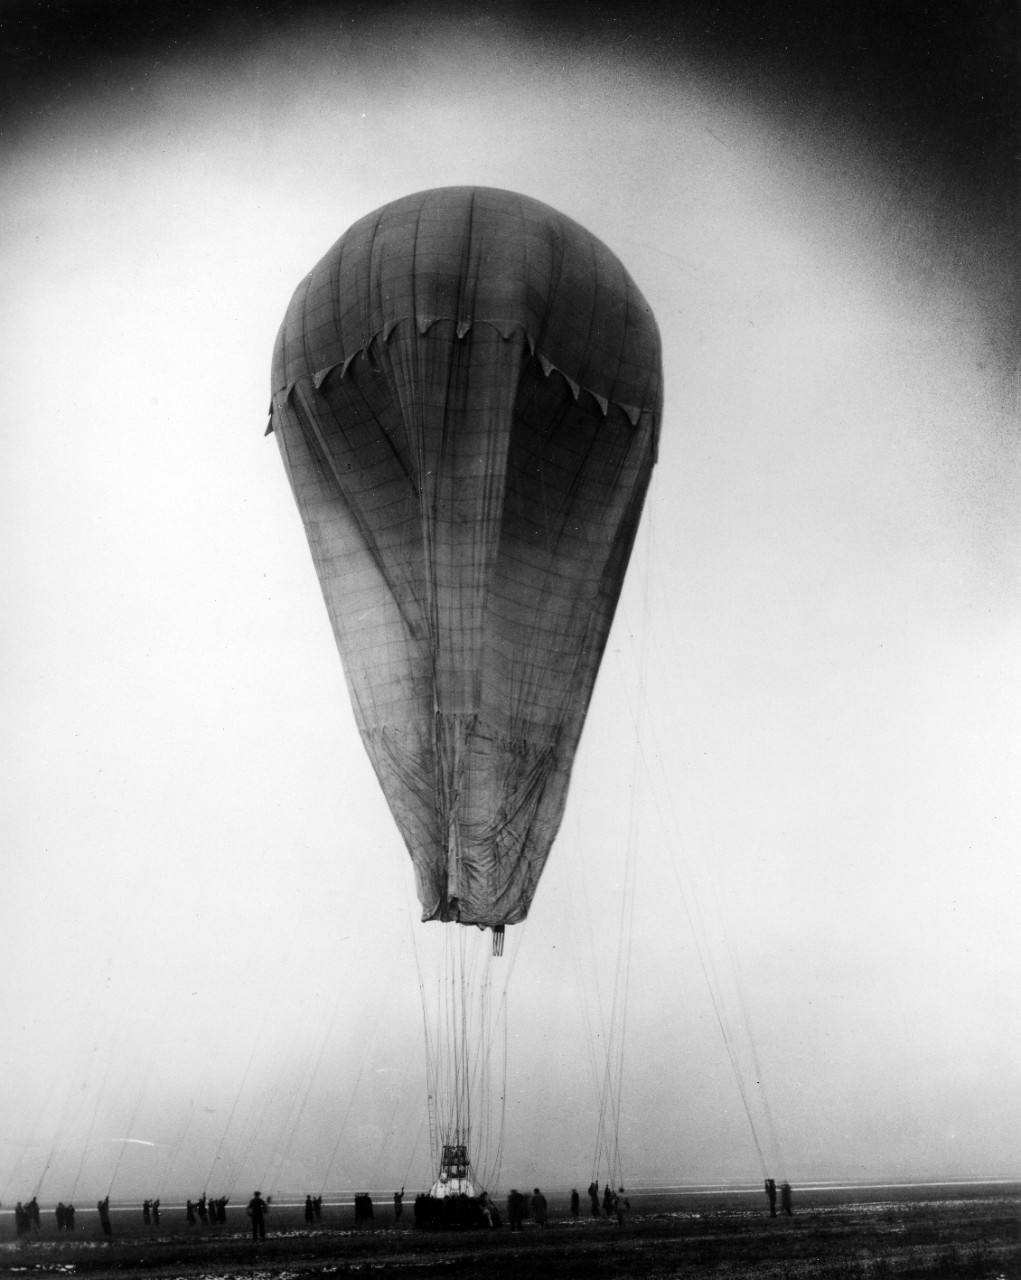 "Century of Progress" balloon